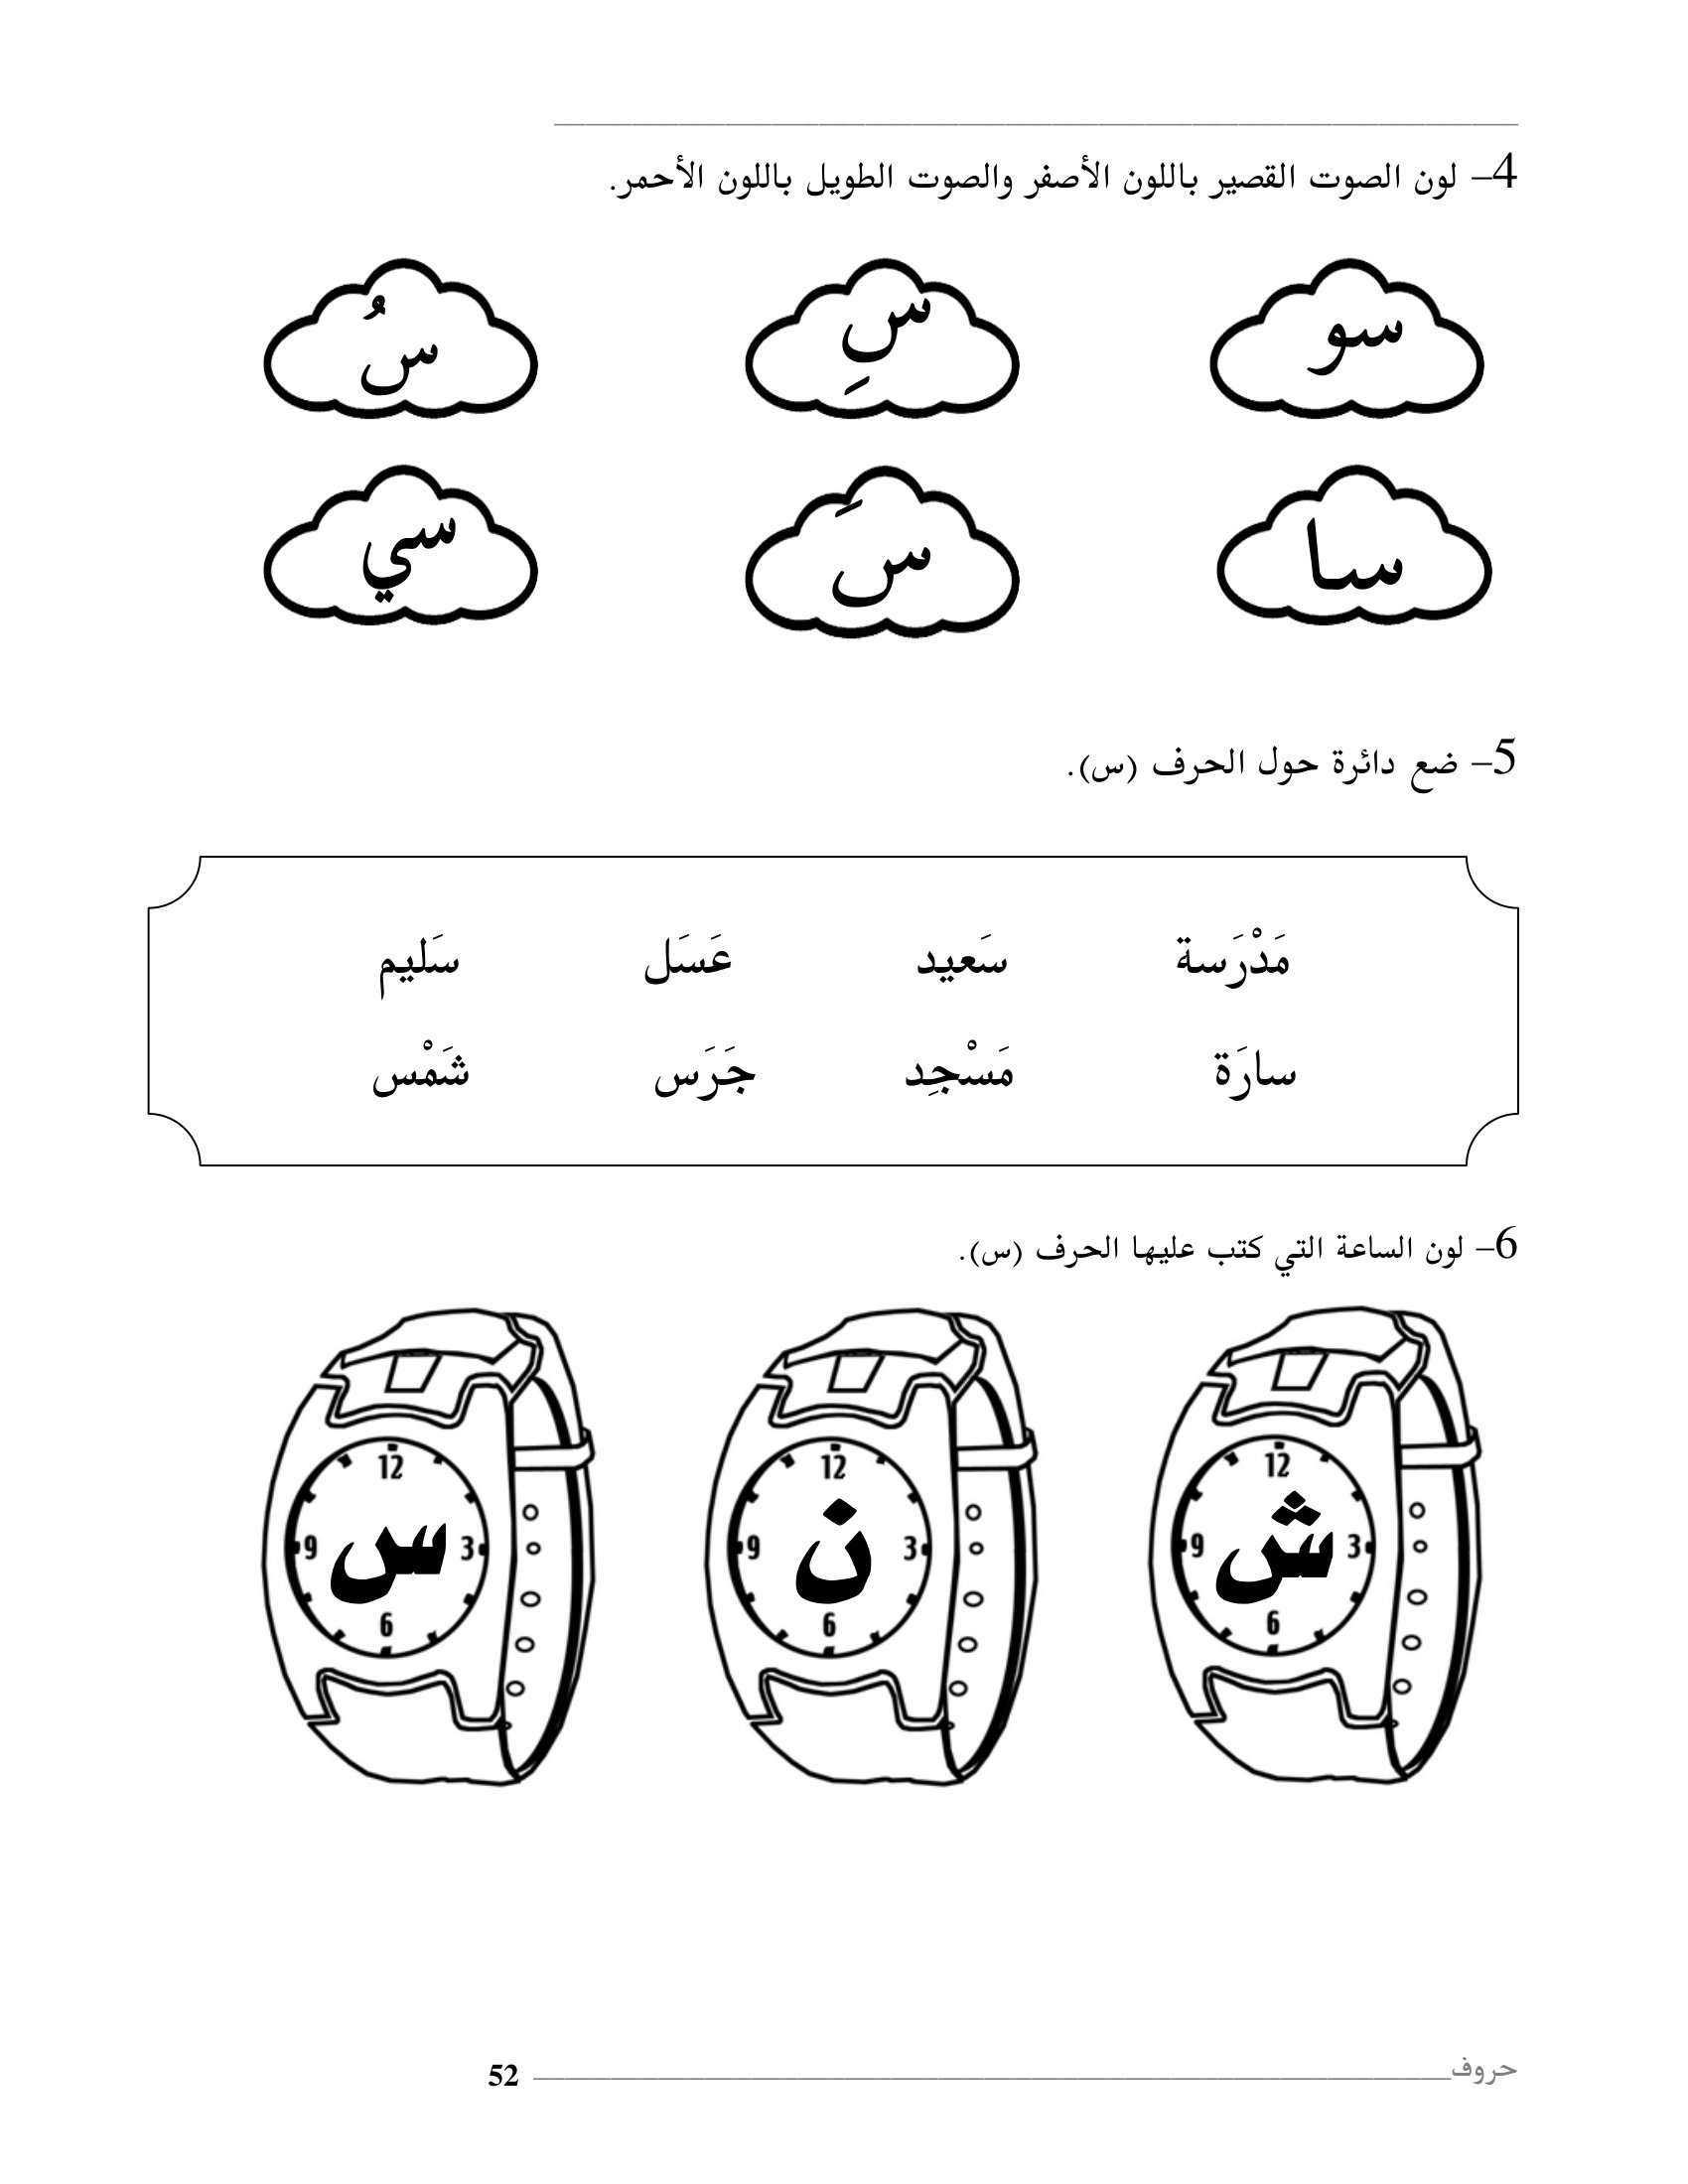 افضل كتاب لتعليم الحروف الهجائية العربية pdf تحميل مباشر